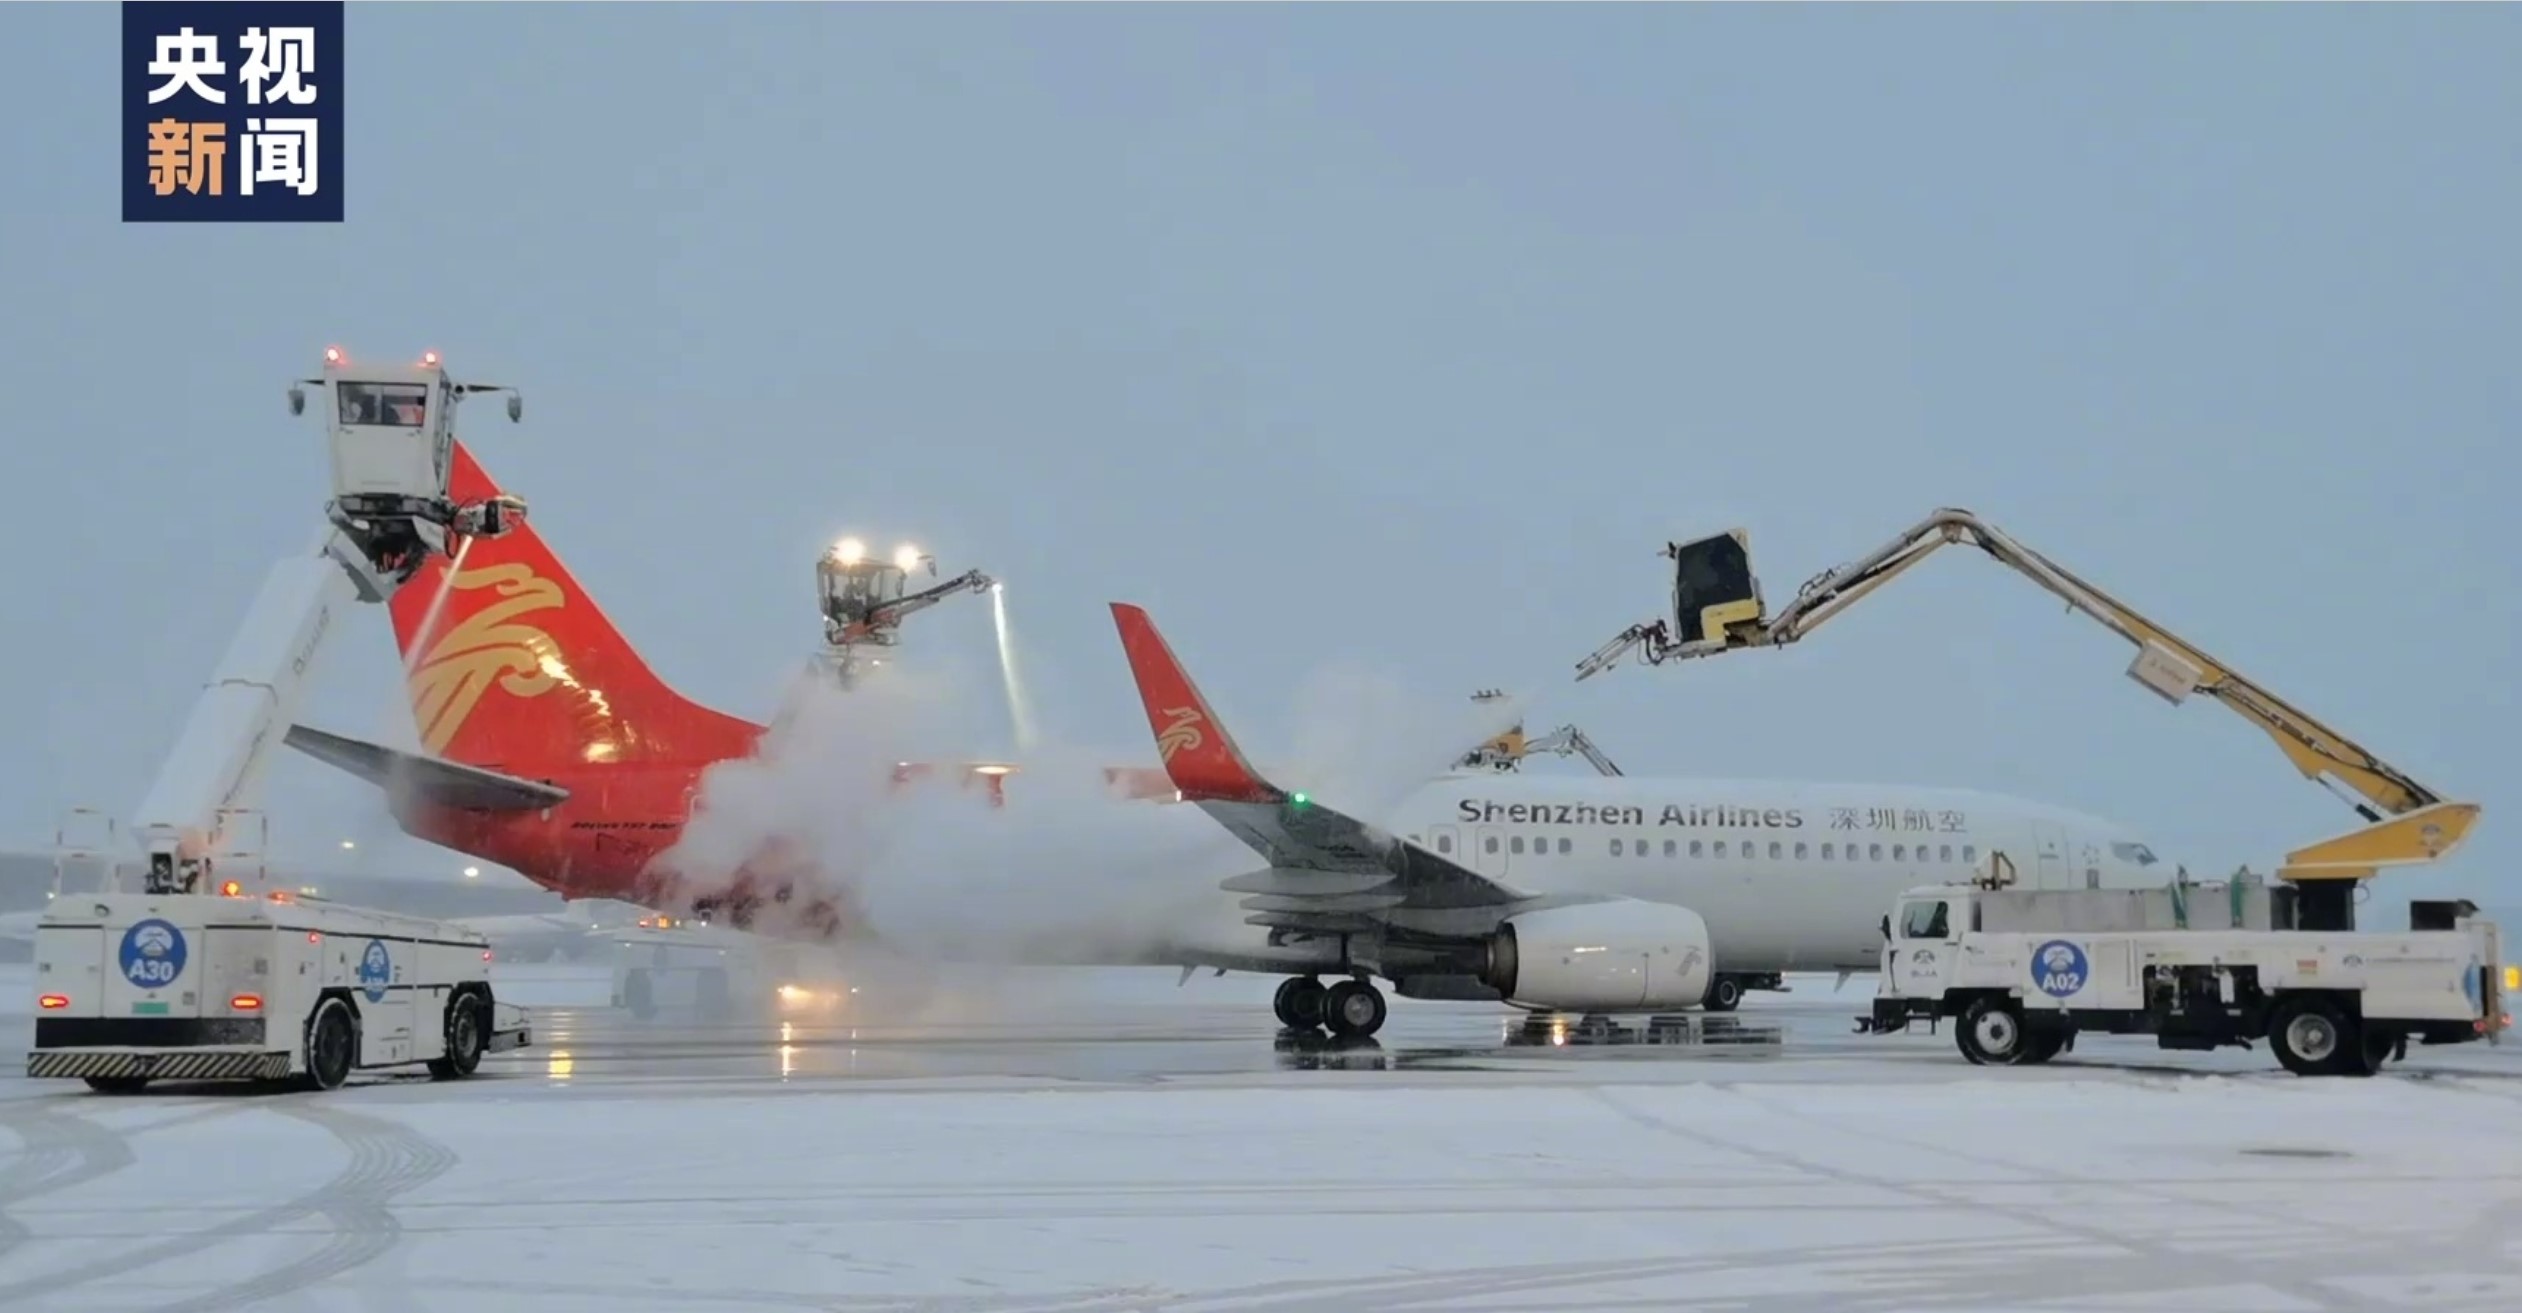 降雪持续 首都机场整体运行秩序正常